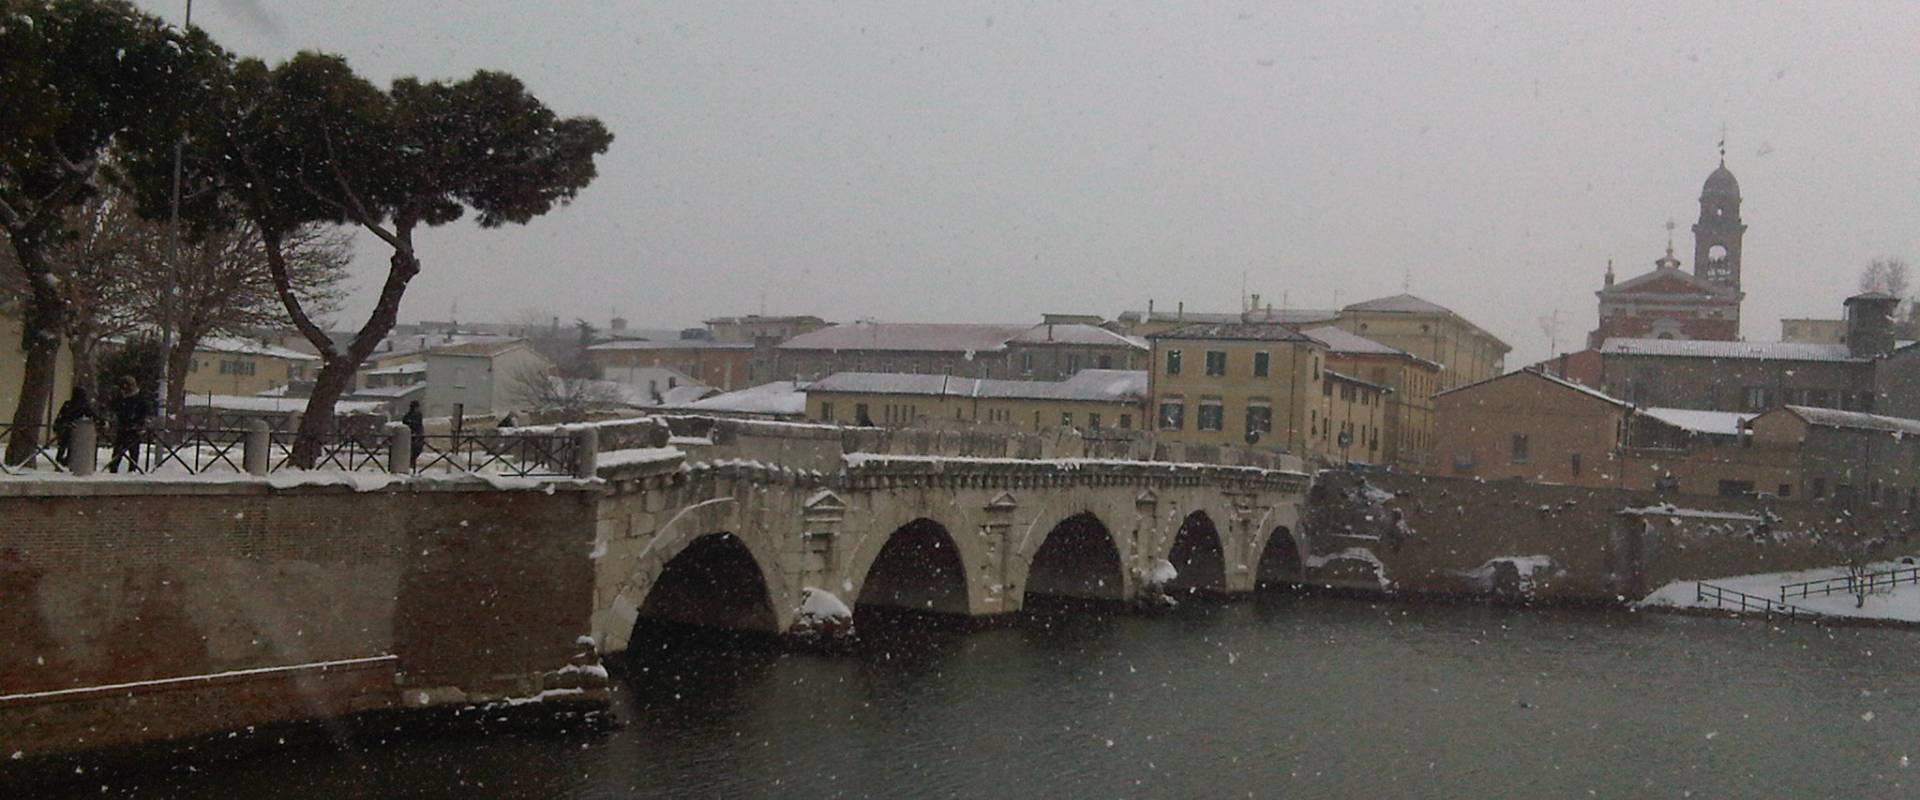 La neve imbianca anche il ponte di Tiberio - opi1010 foto di Opi1010